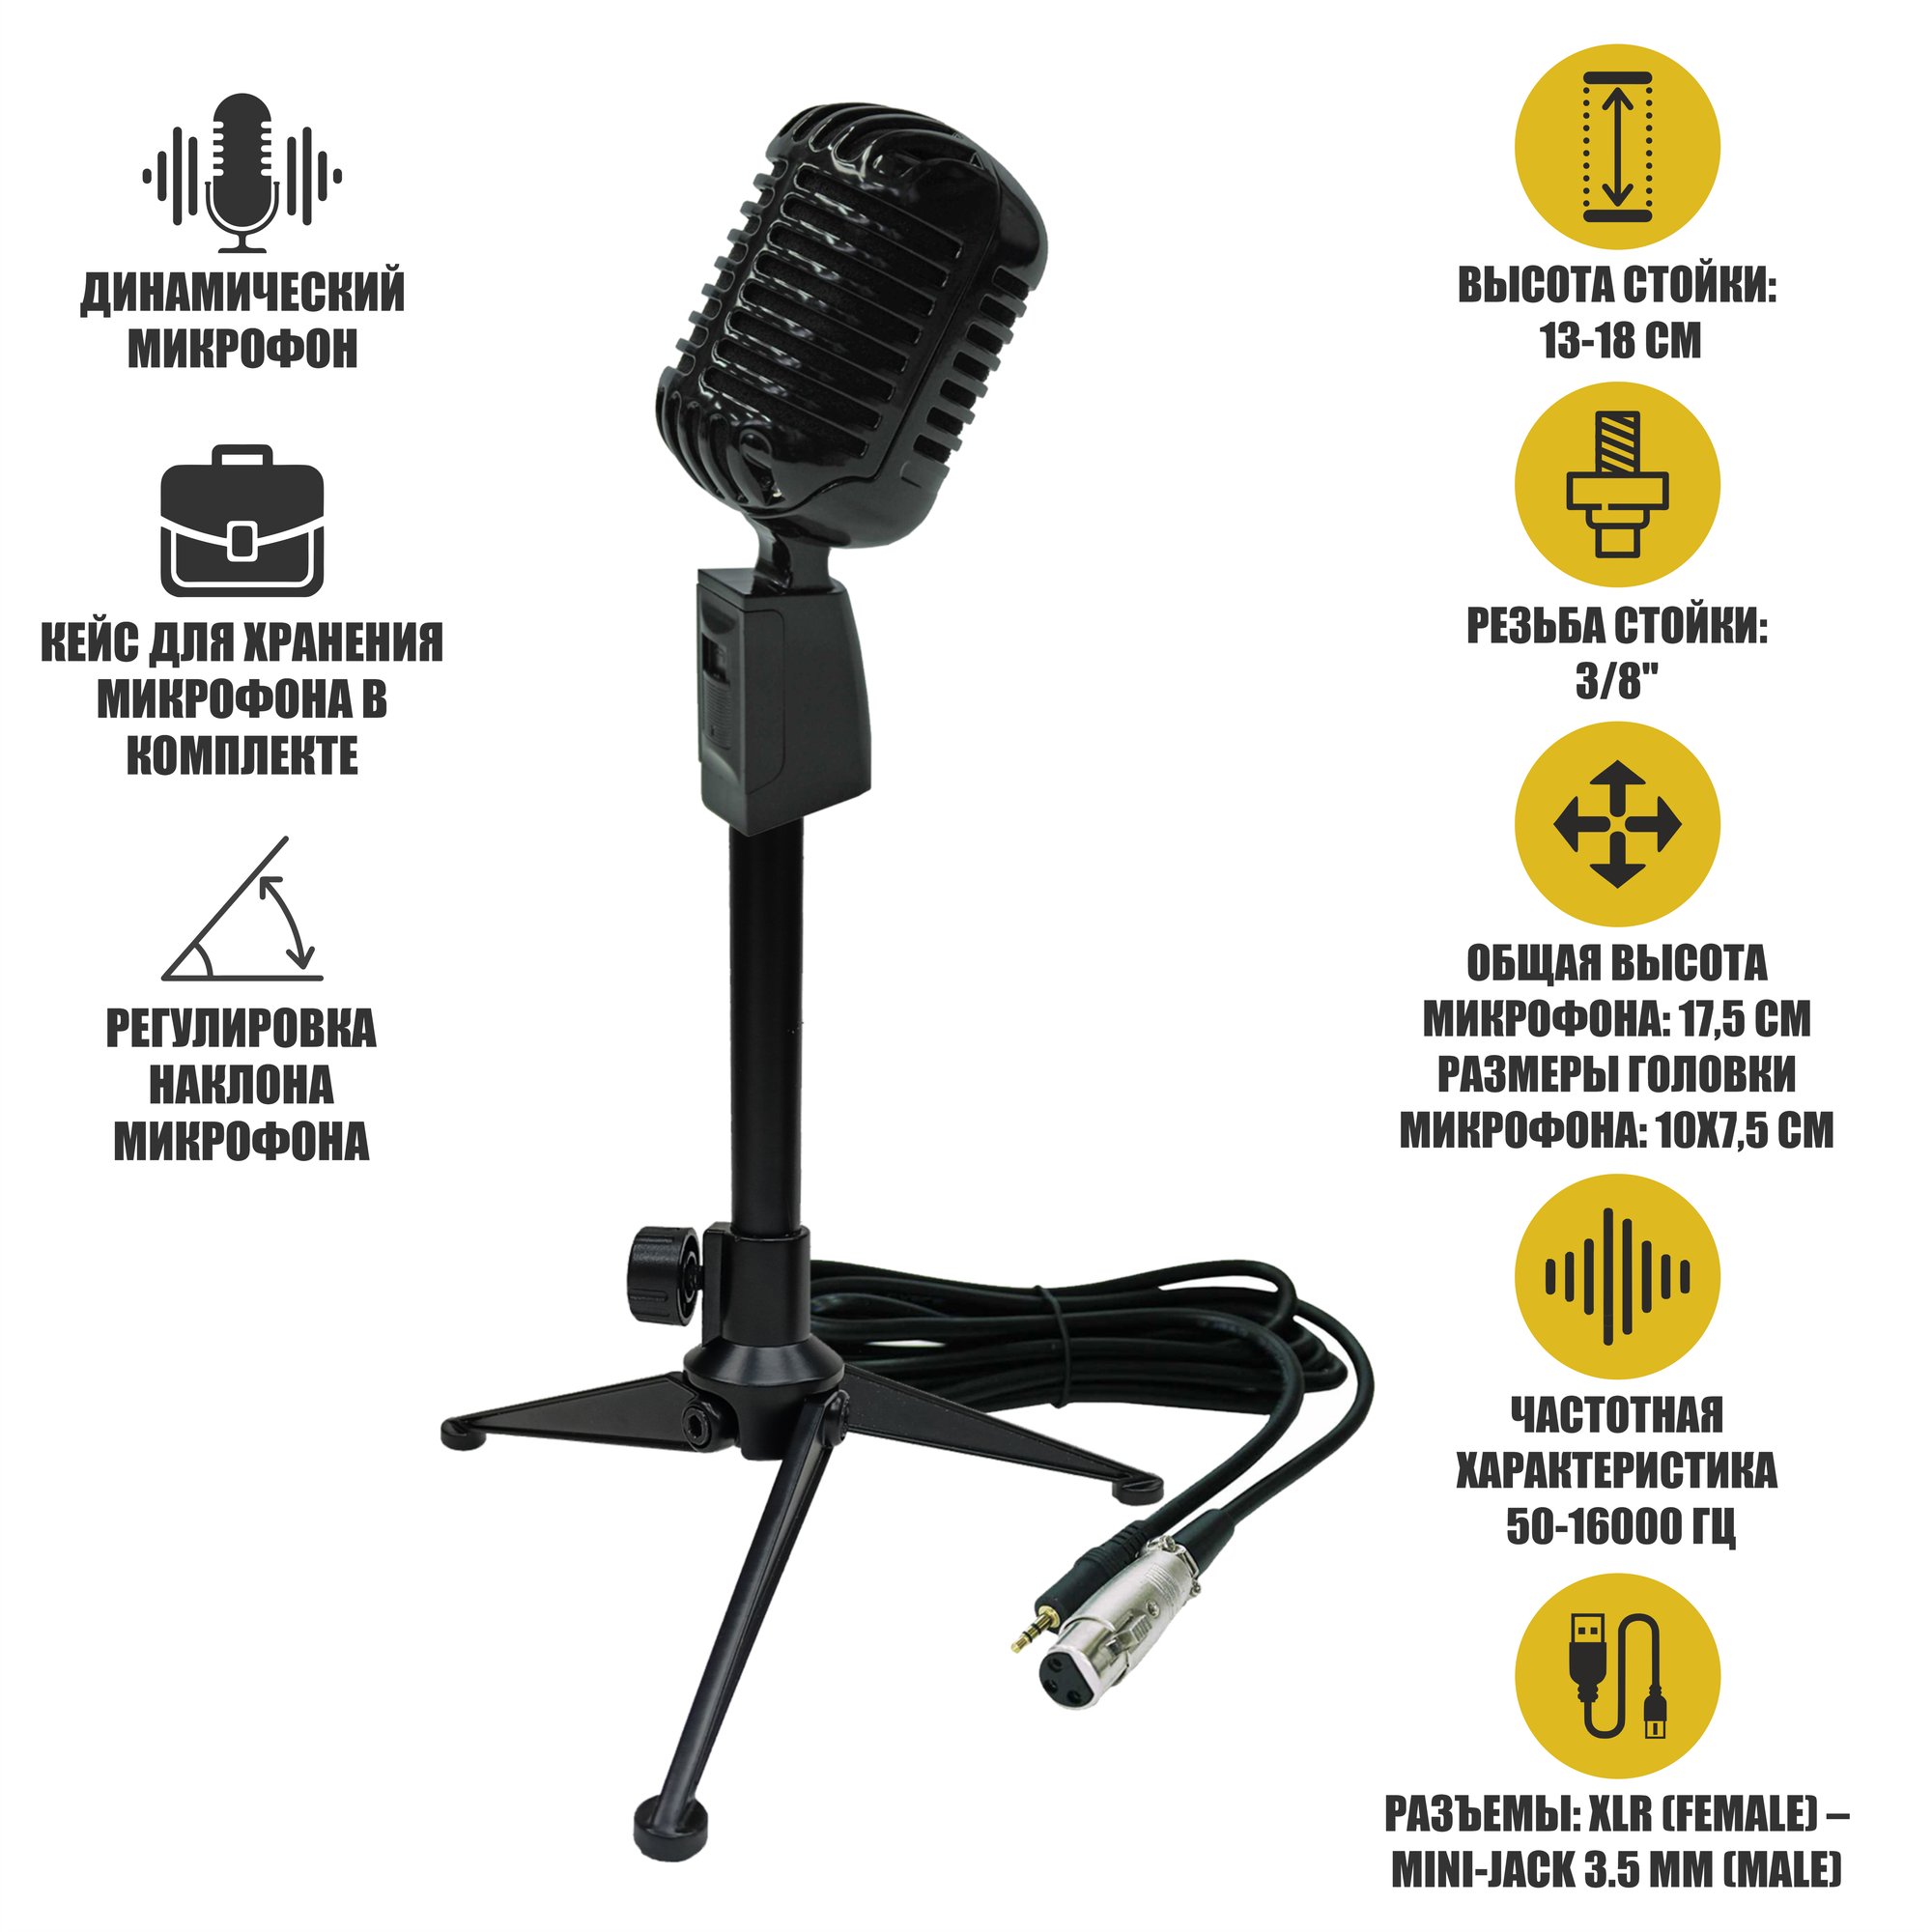 Винтажный динамический микрофон, цвет черный, на настольной стойке MF-027-38